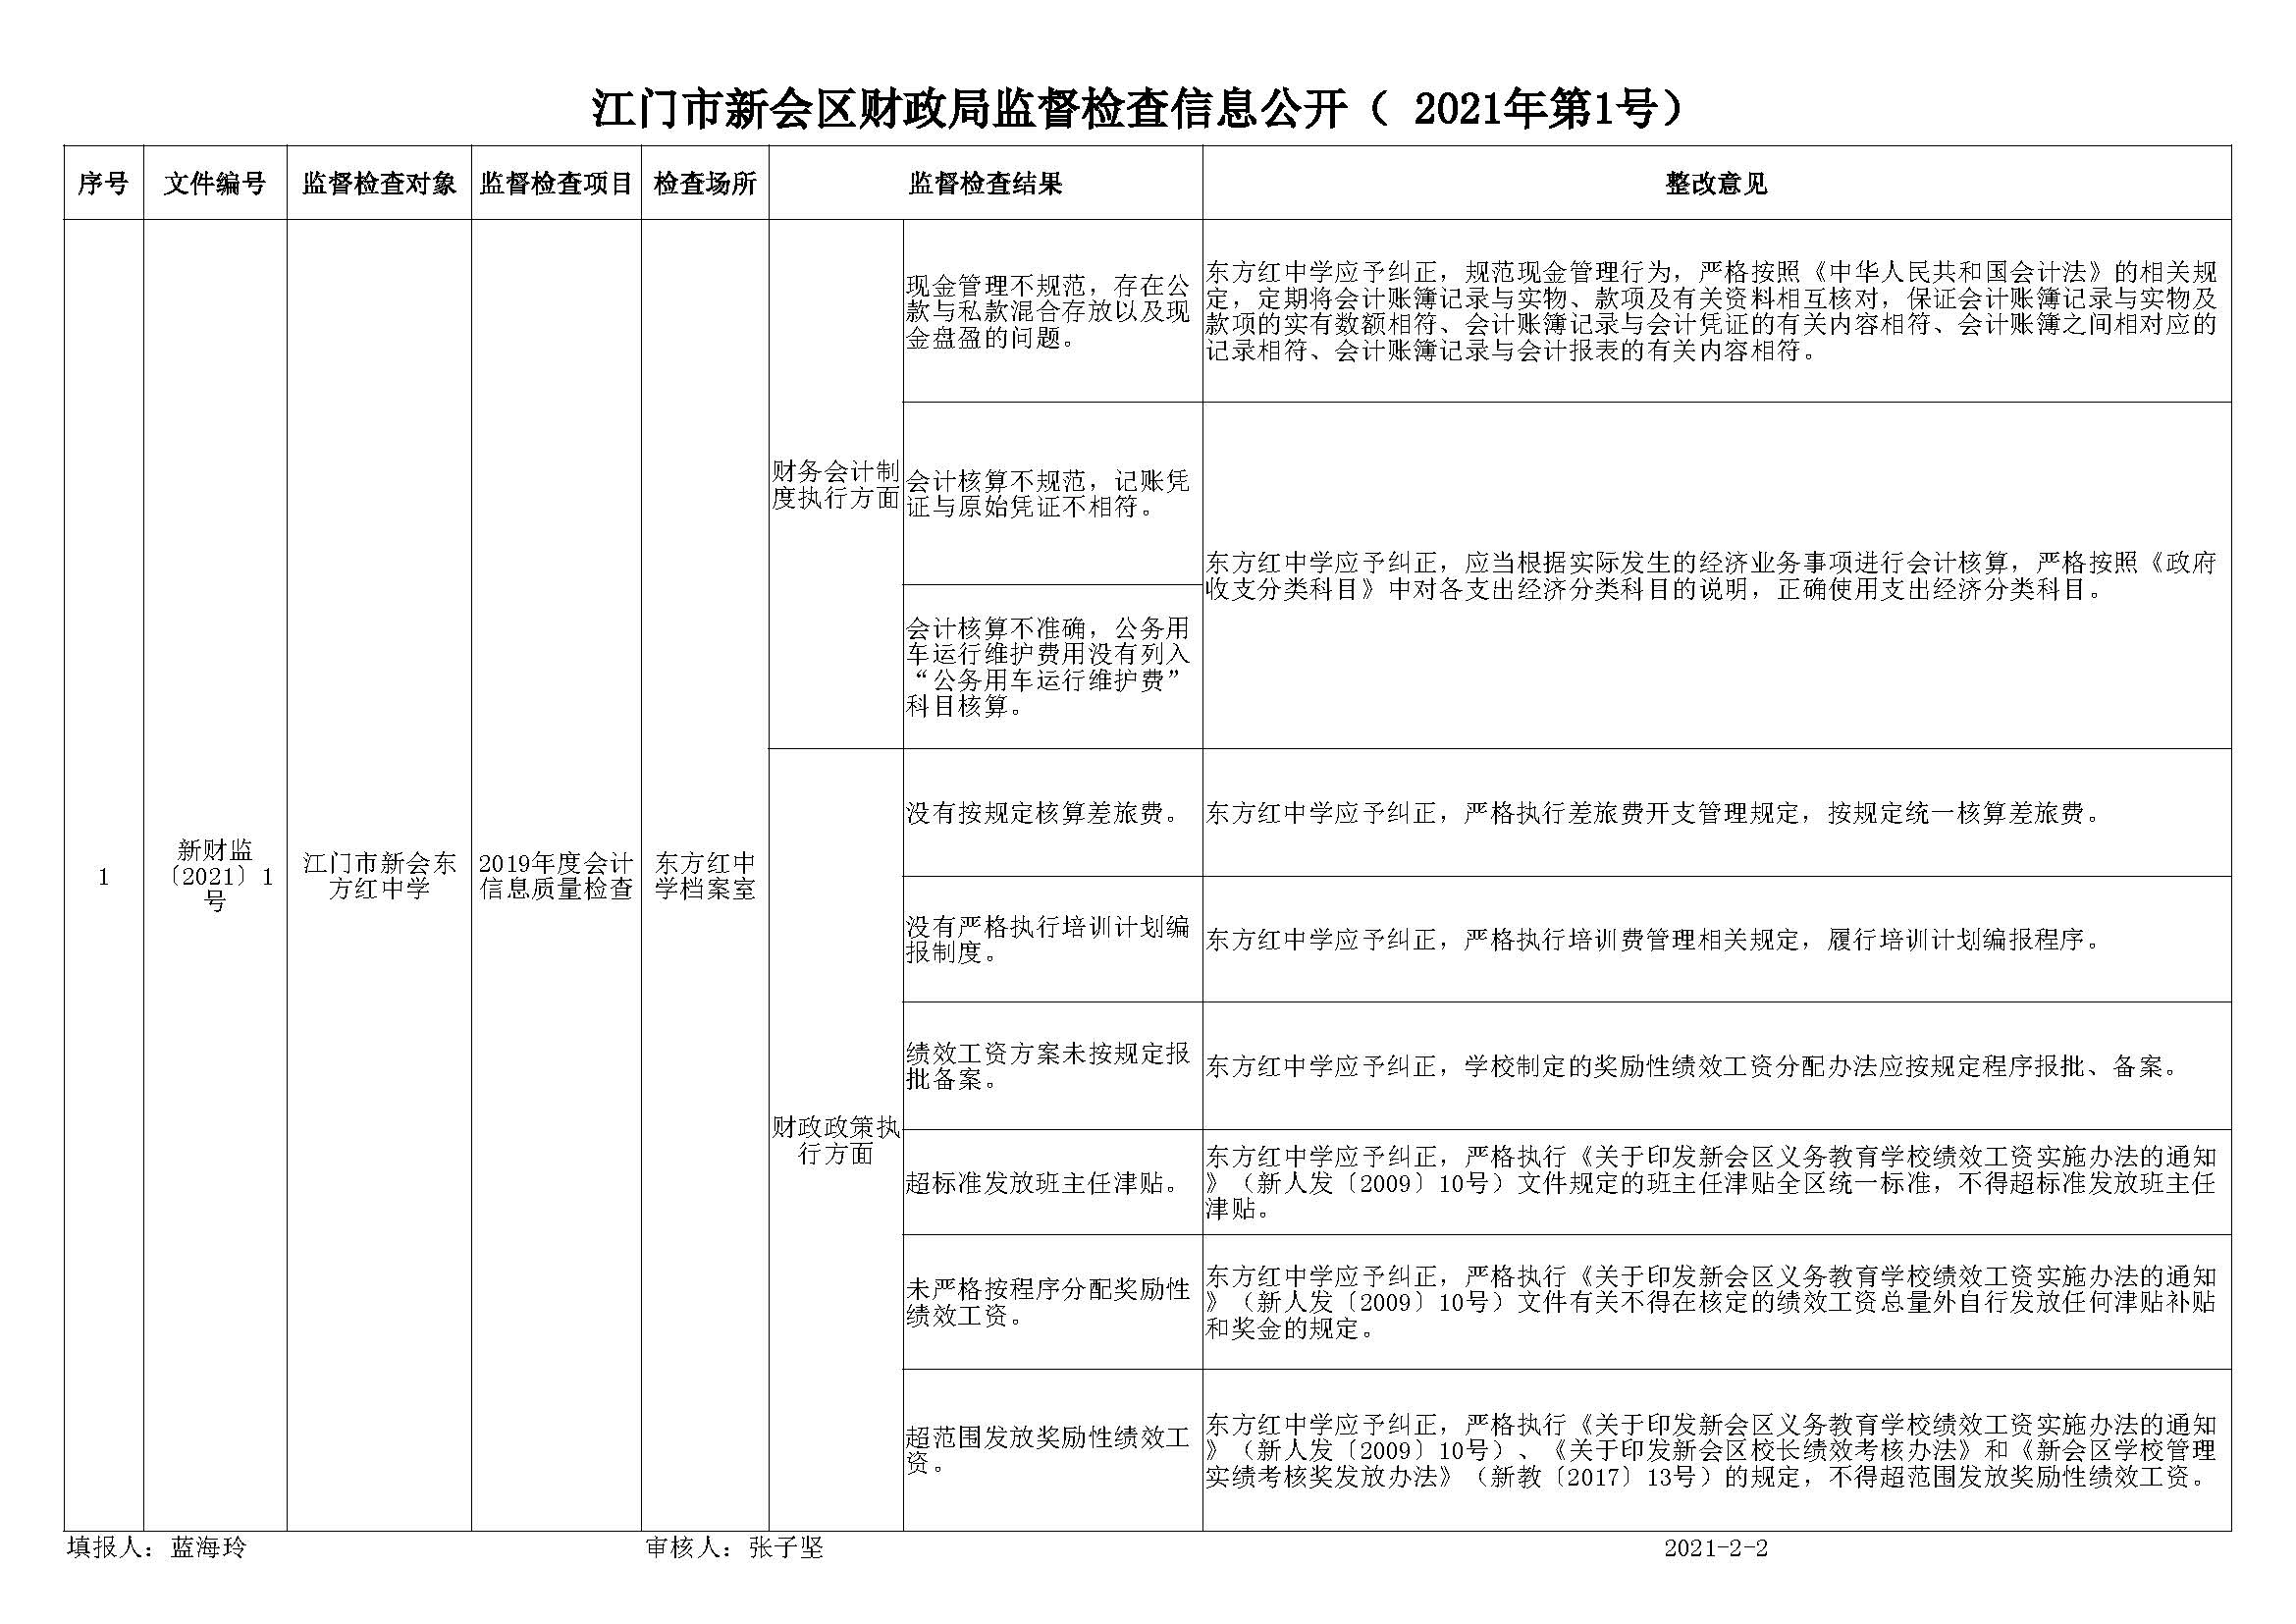 2020年会计信息质量检查信息公开表（东方红中学）.jpg